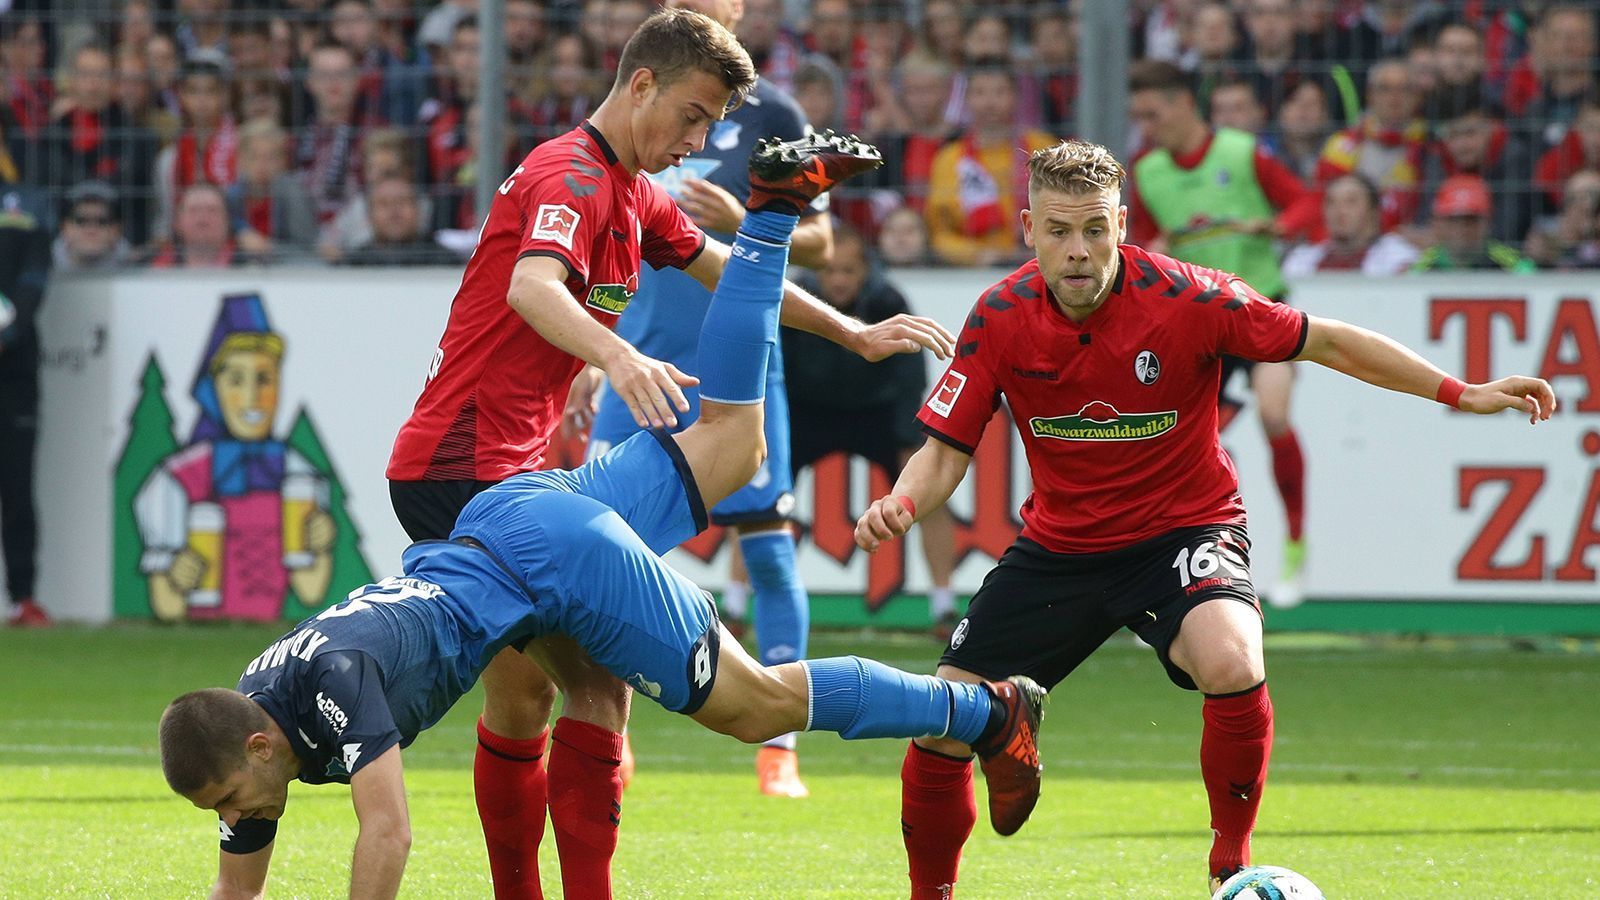 
                <strong>Auslaufende Verträge: SC Freiburg</strong><br>
                Jannik Haberer (Vertragssituation unklar), Florian Kath (Vertrag läuft aus), Yoric Ravet (wechselt zu Grenoble Foot 38)
              